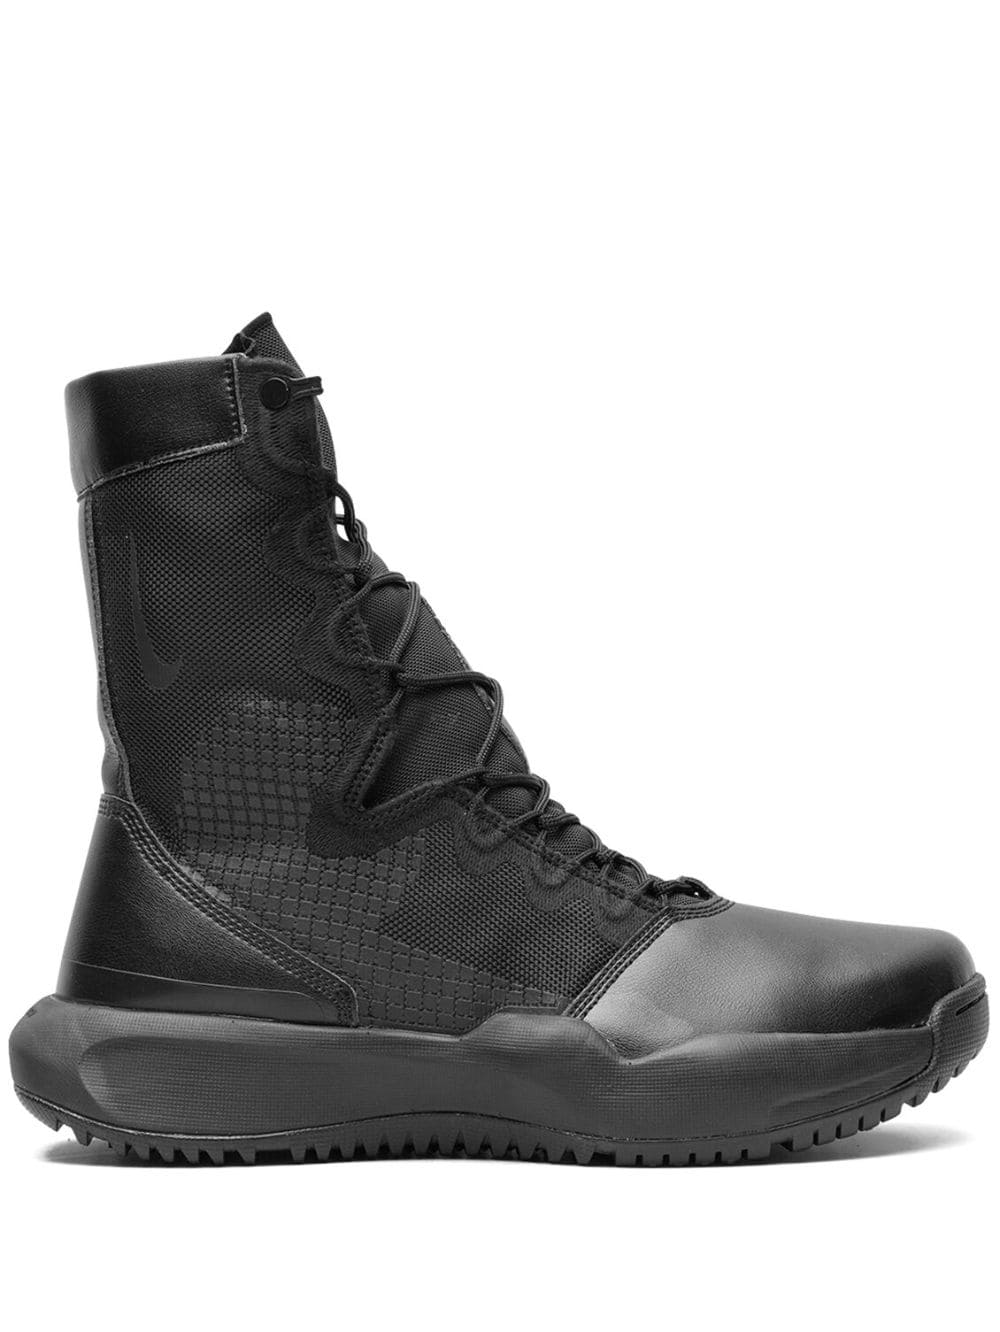 Nike SFB B1 tactical boots - Black von Nike